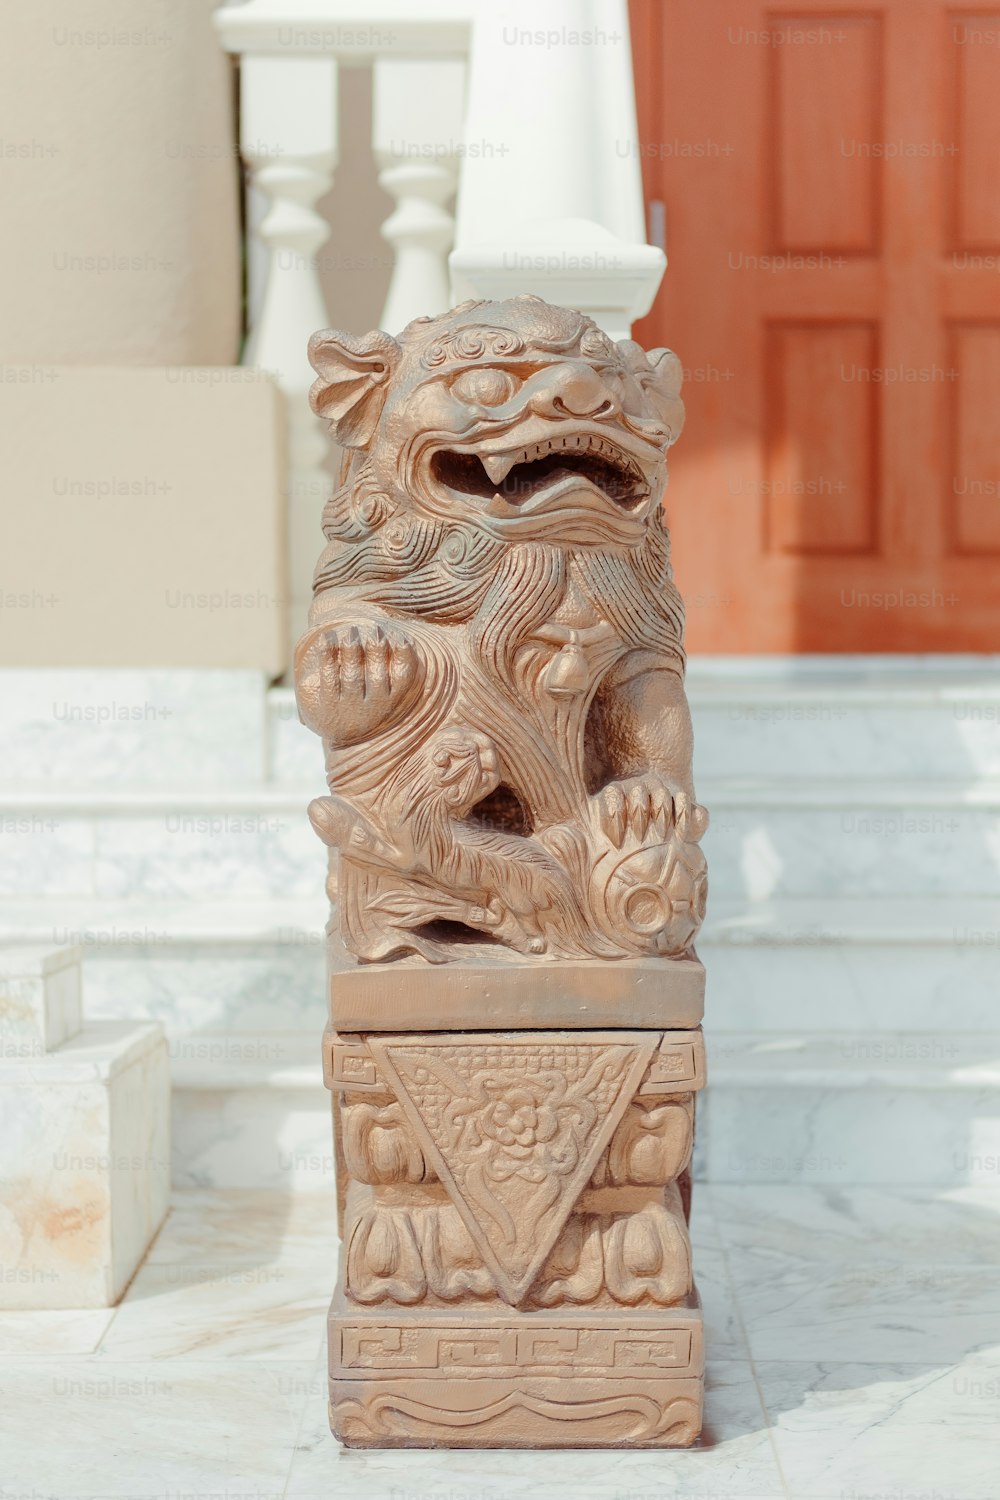 建物の階段にある龍の像